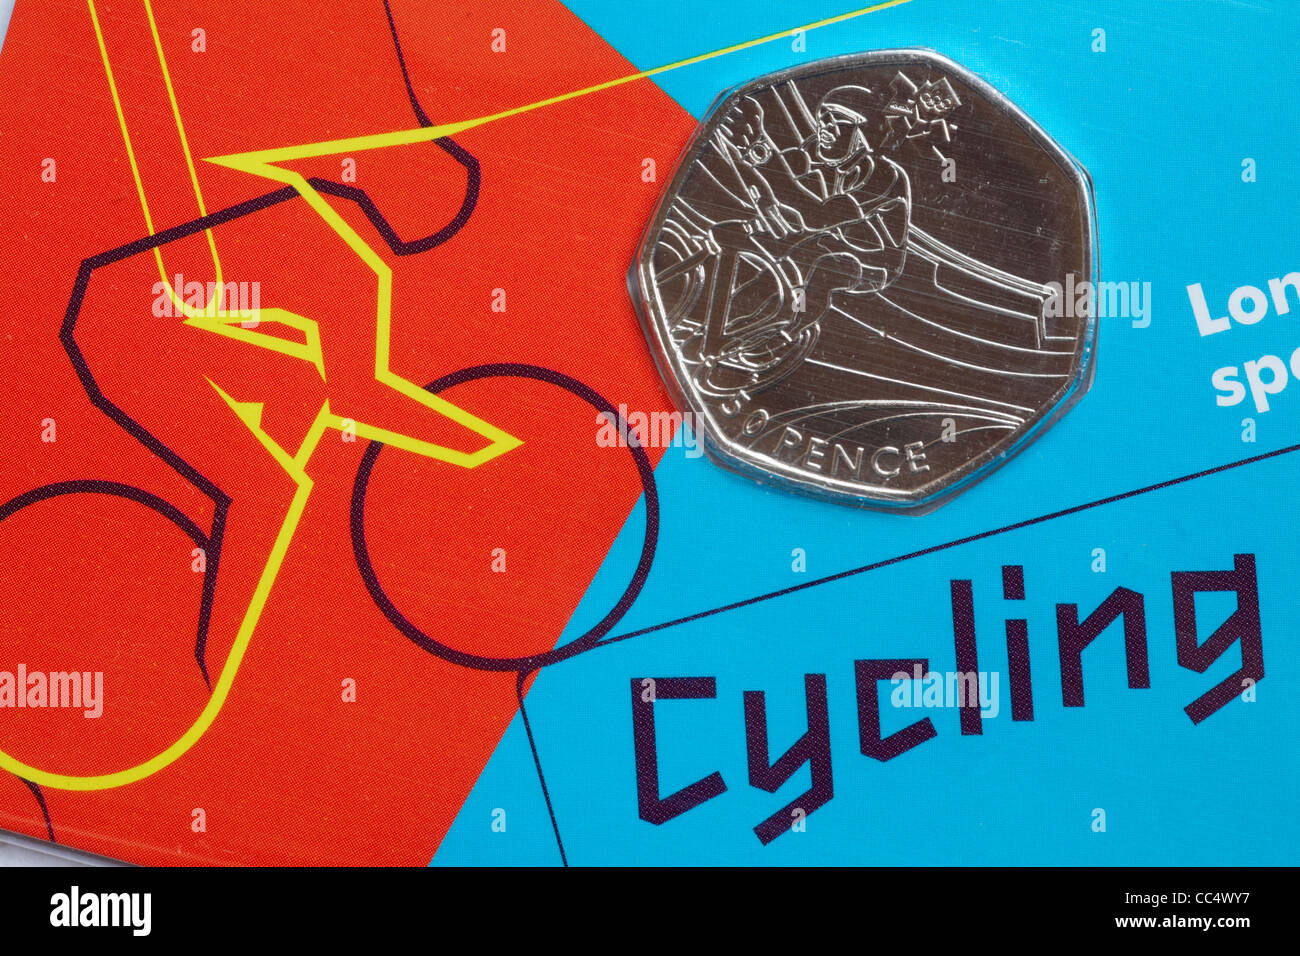 Moneta in edizione speciale 50p, moneta da cinquanta pence, parte della collezione sportiva di Londra 2012 per i Giochi Olimpici - Ciclismo Foto Stock